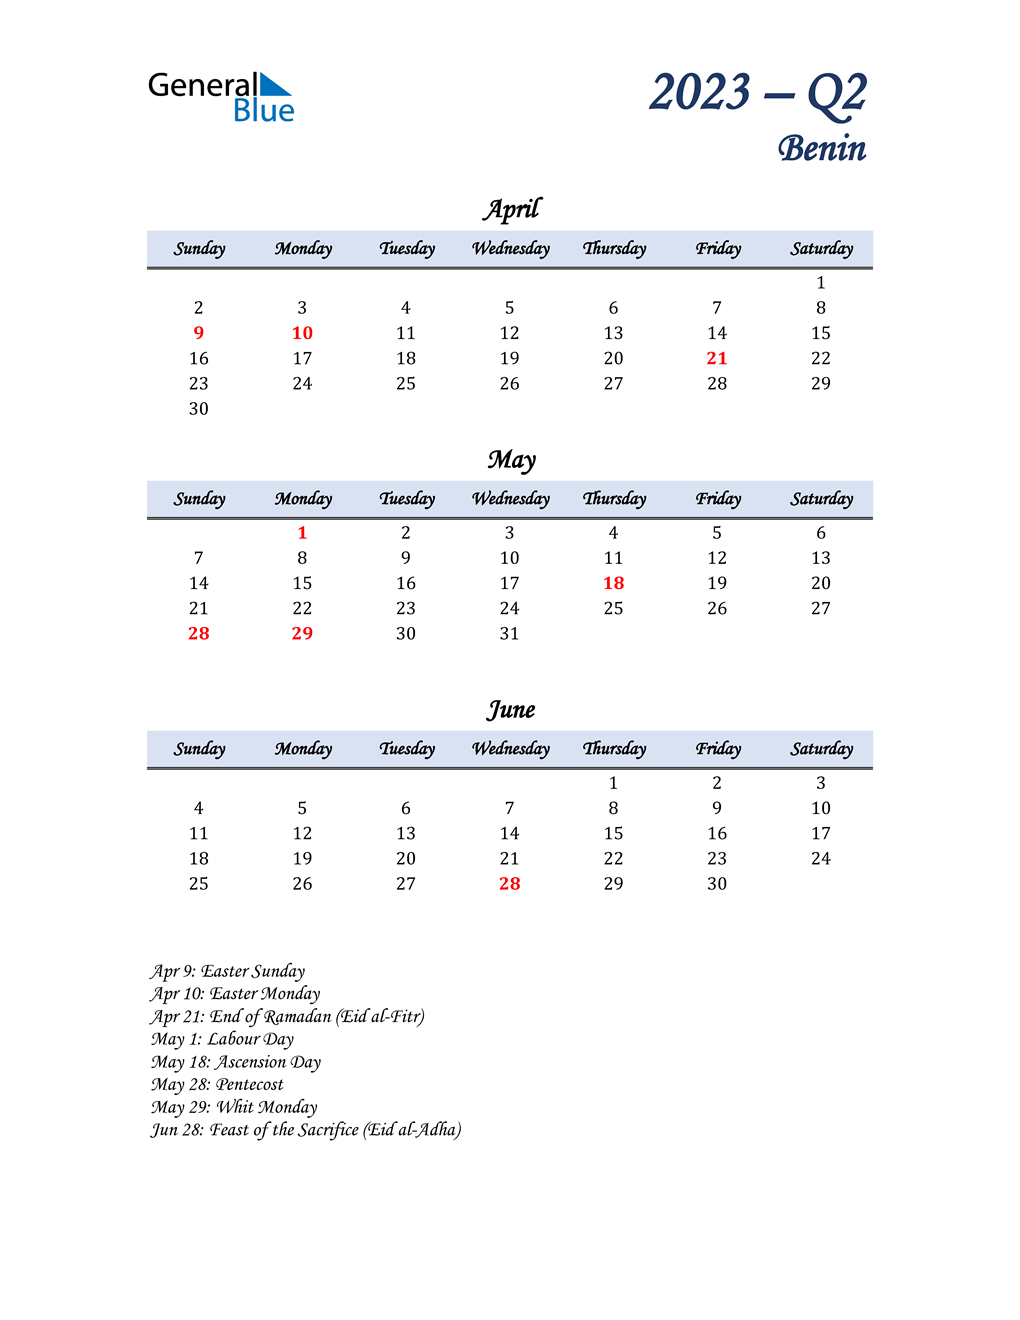  April, May, and June Calendar for Benin